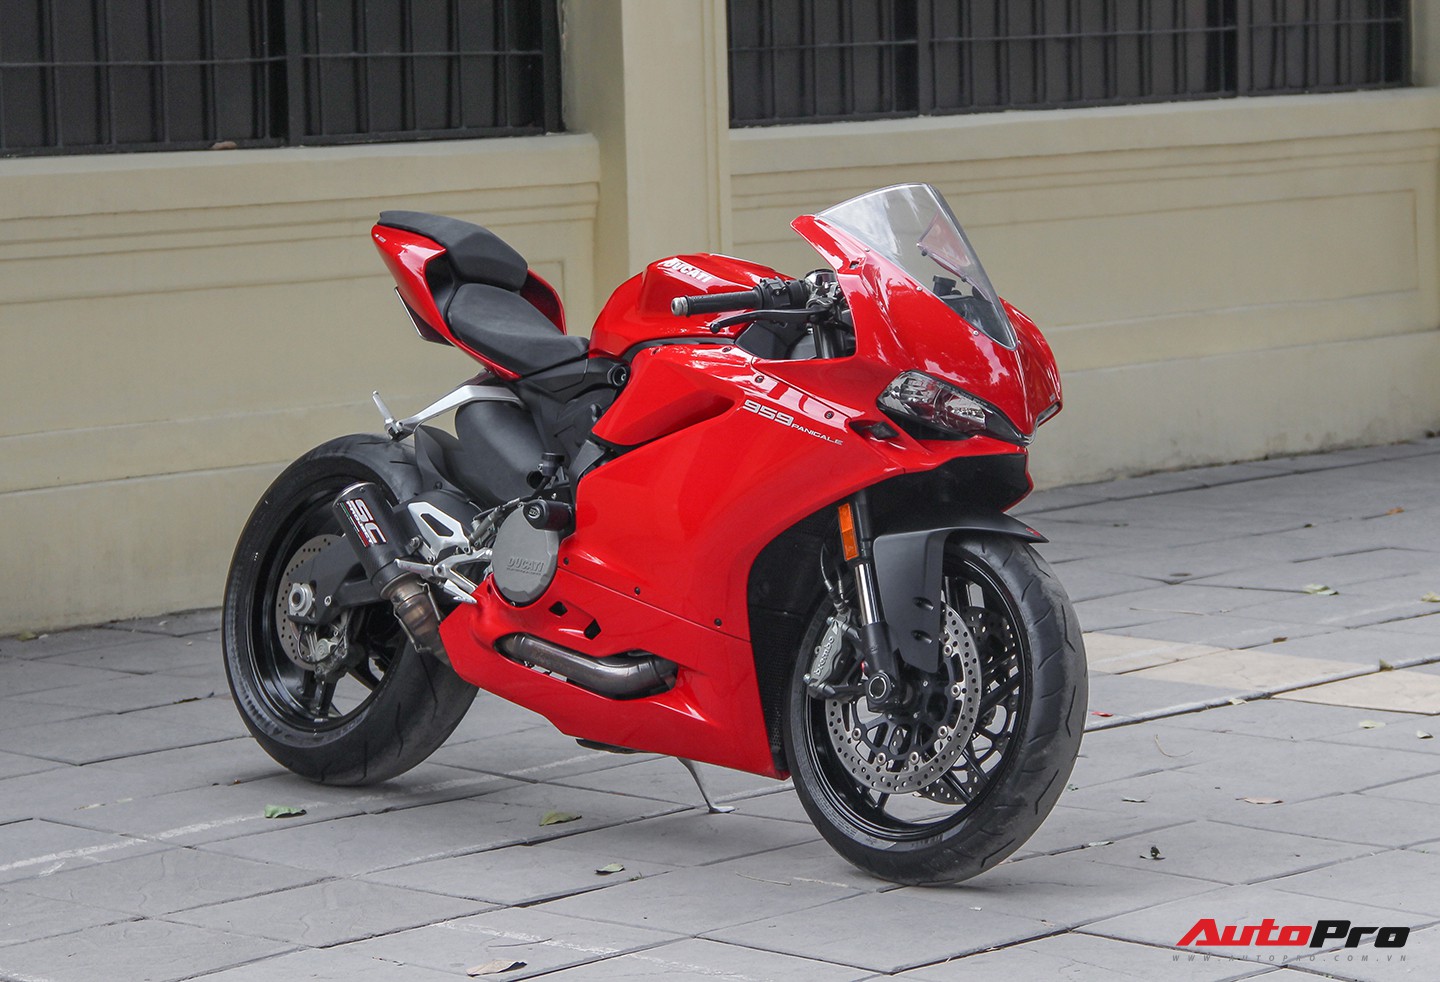 Hình ảnh các hot girl bên siêu moto Ducati nóng bỏng